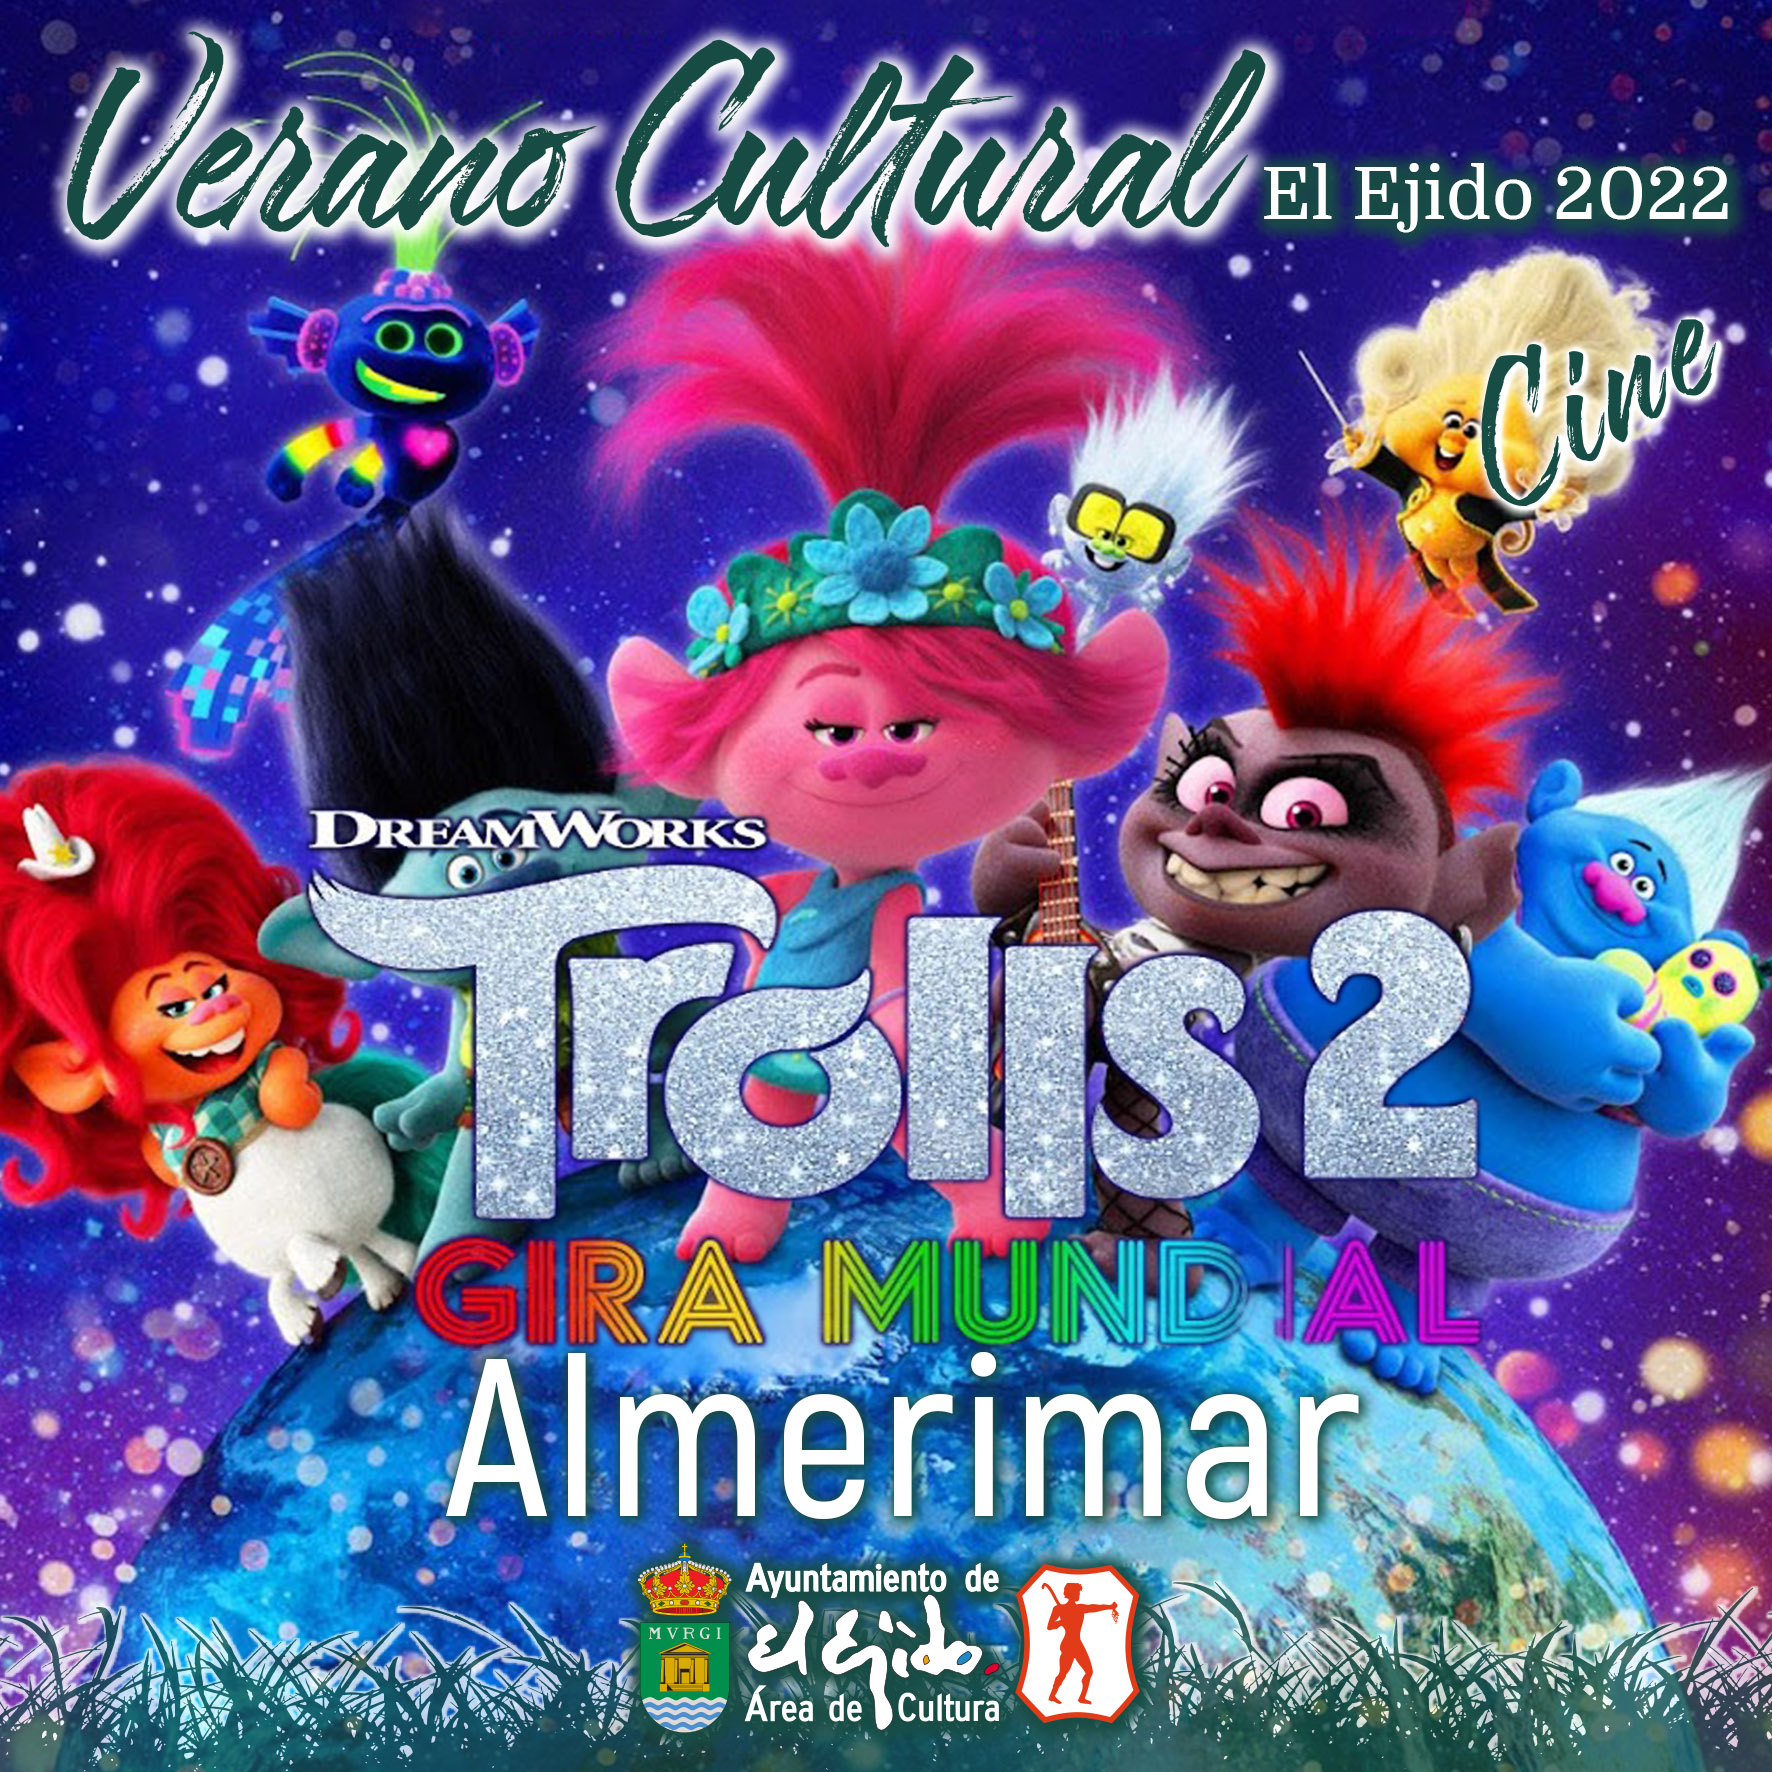 Verano Cultural 2022 de El Ejido – Cine – Almerimar – Trolls 2 gira mundial